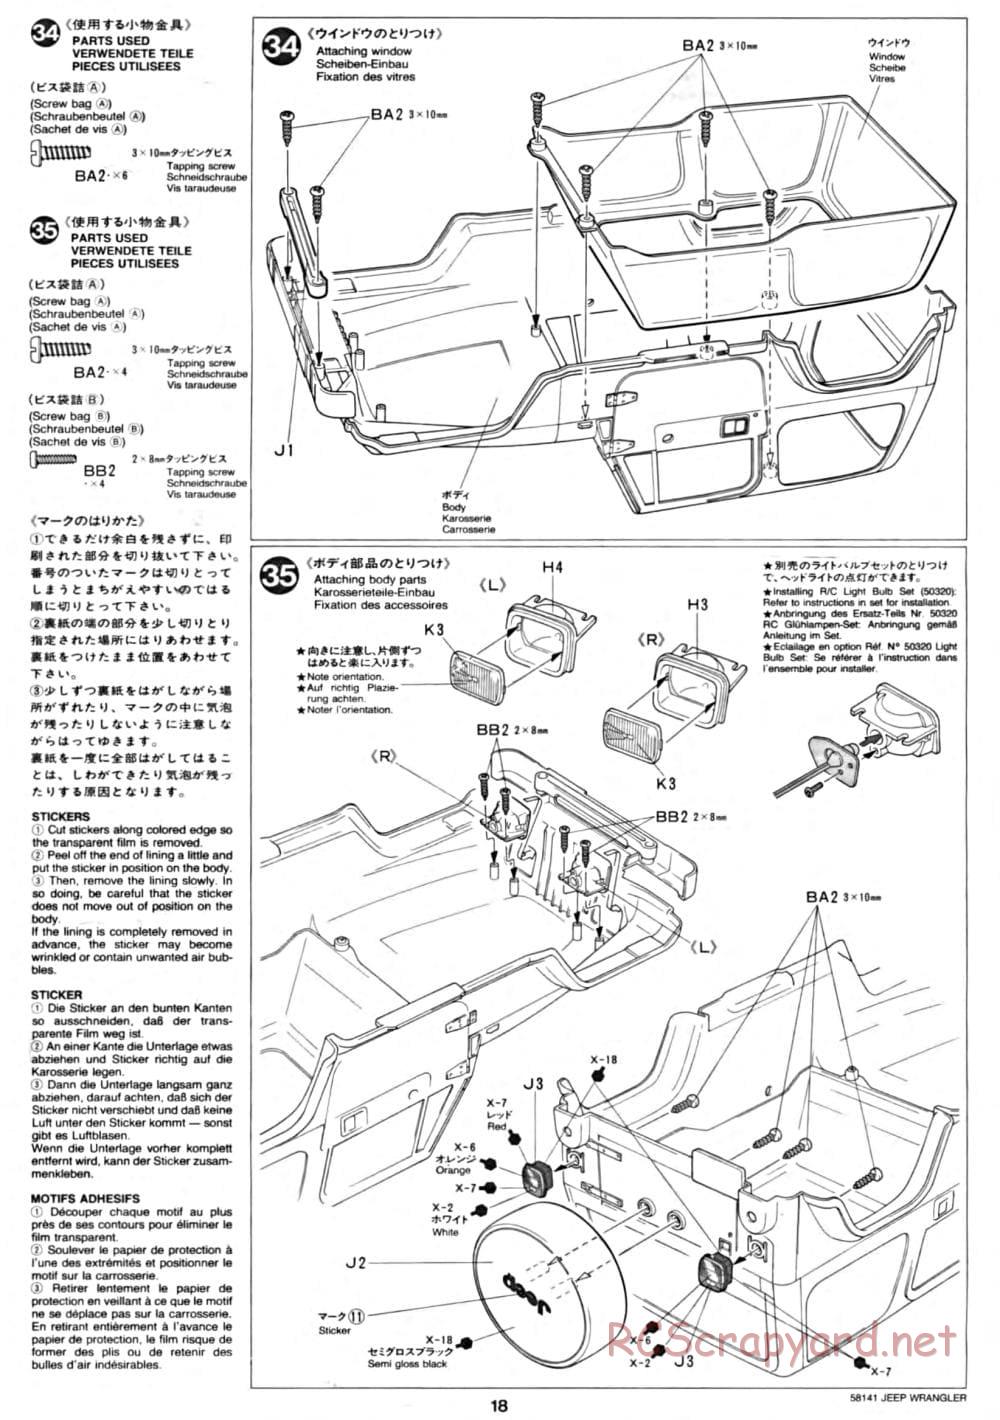 Tamiya - Jeep Wrangler - CC-01 Chassis - Manual - Page 18